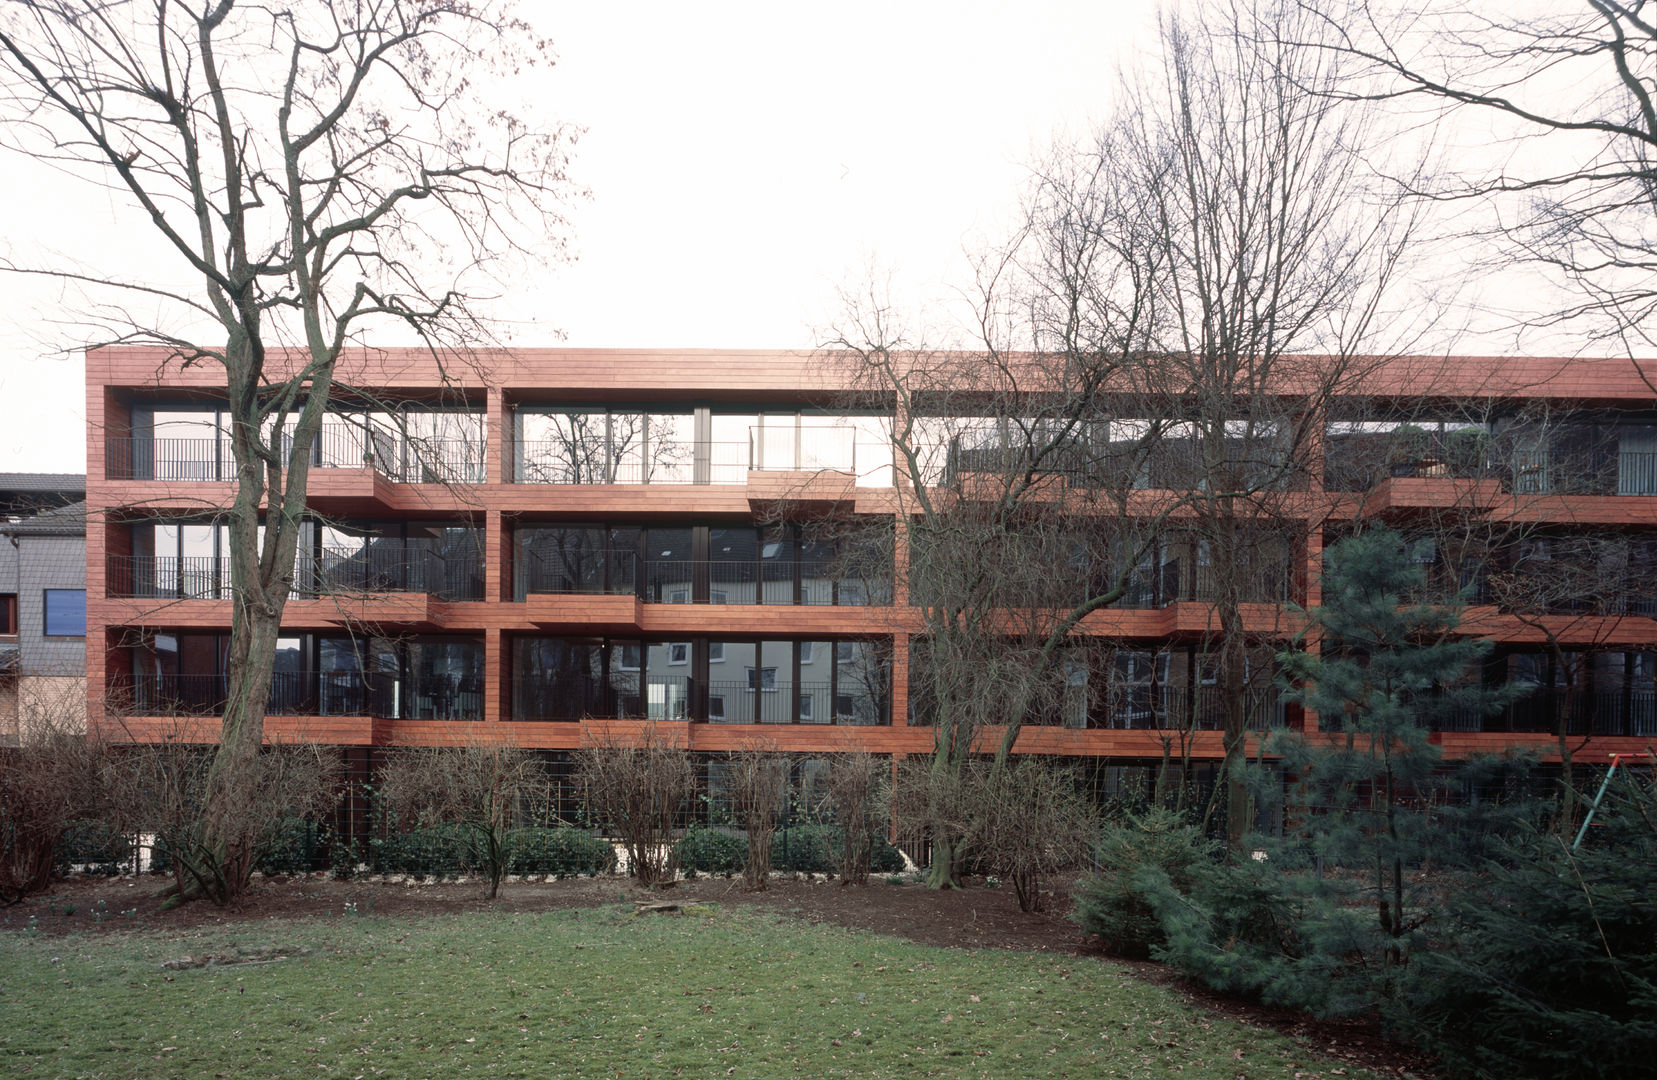 Bogenallee Wohnen [+], blauraum architekten blauraum architekten منزل عائلي كبير